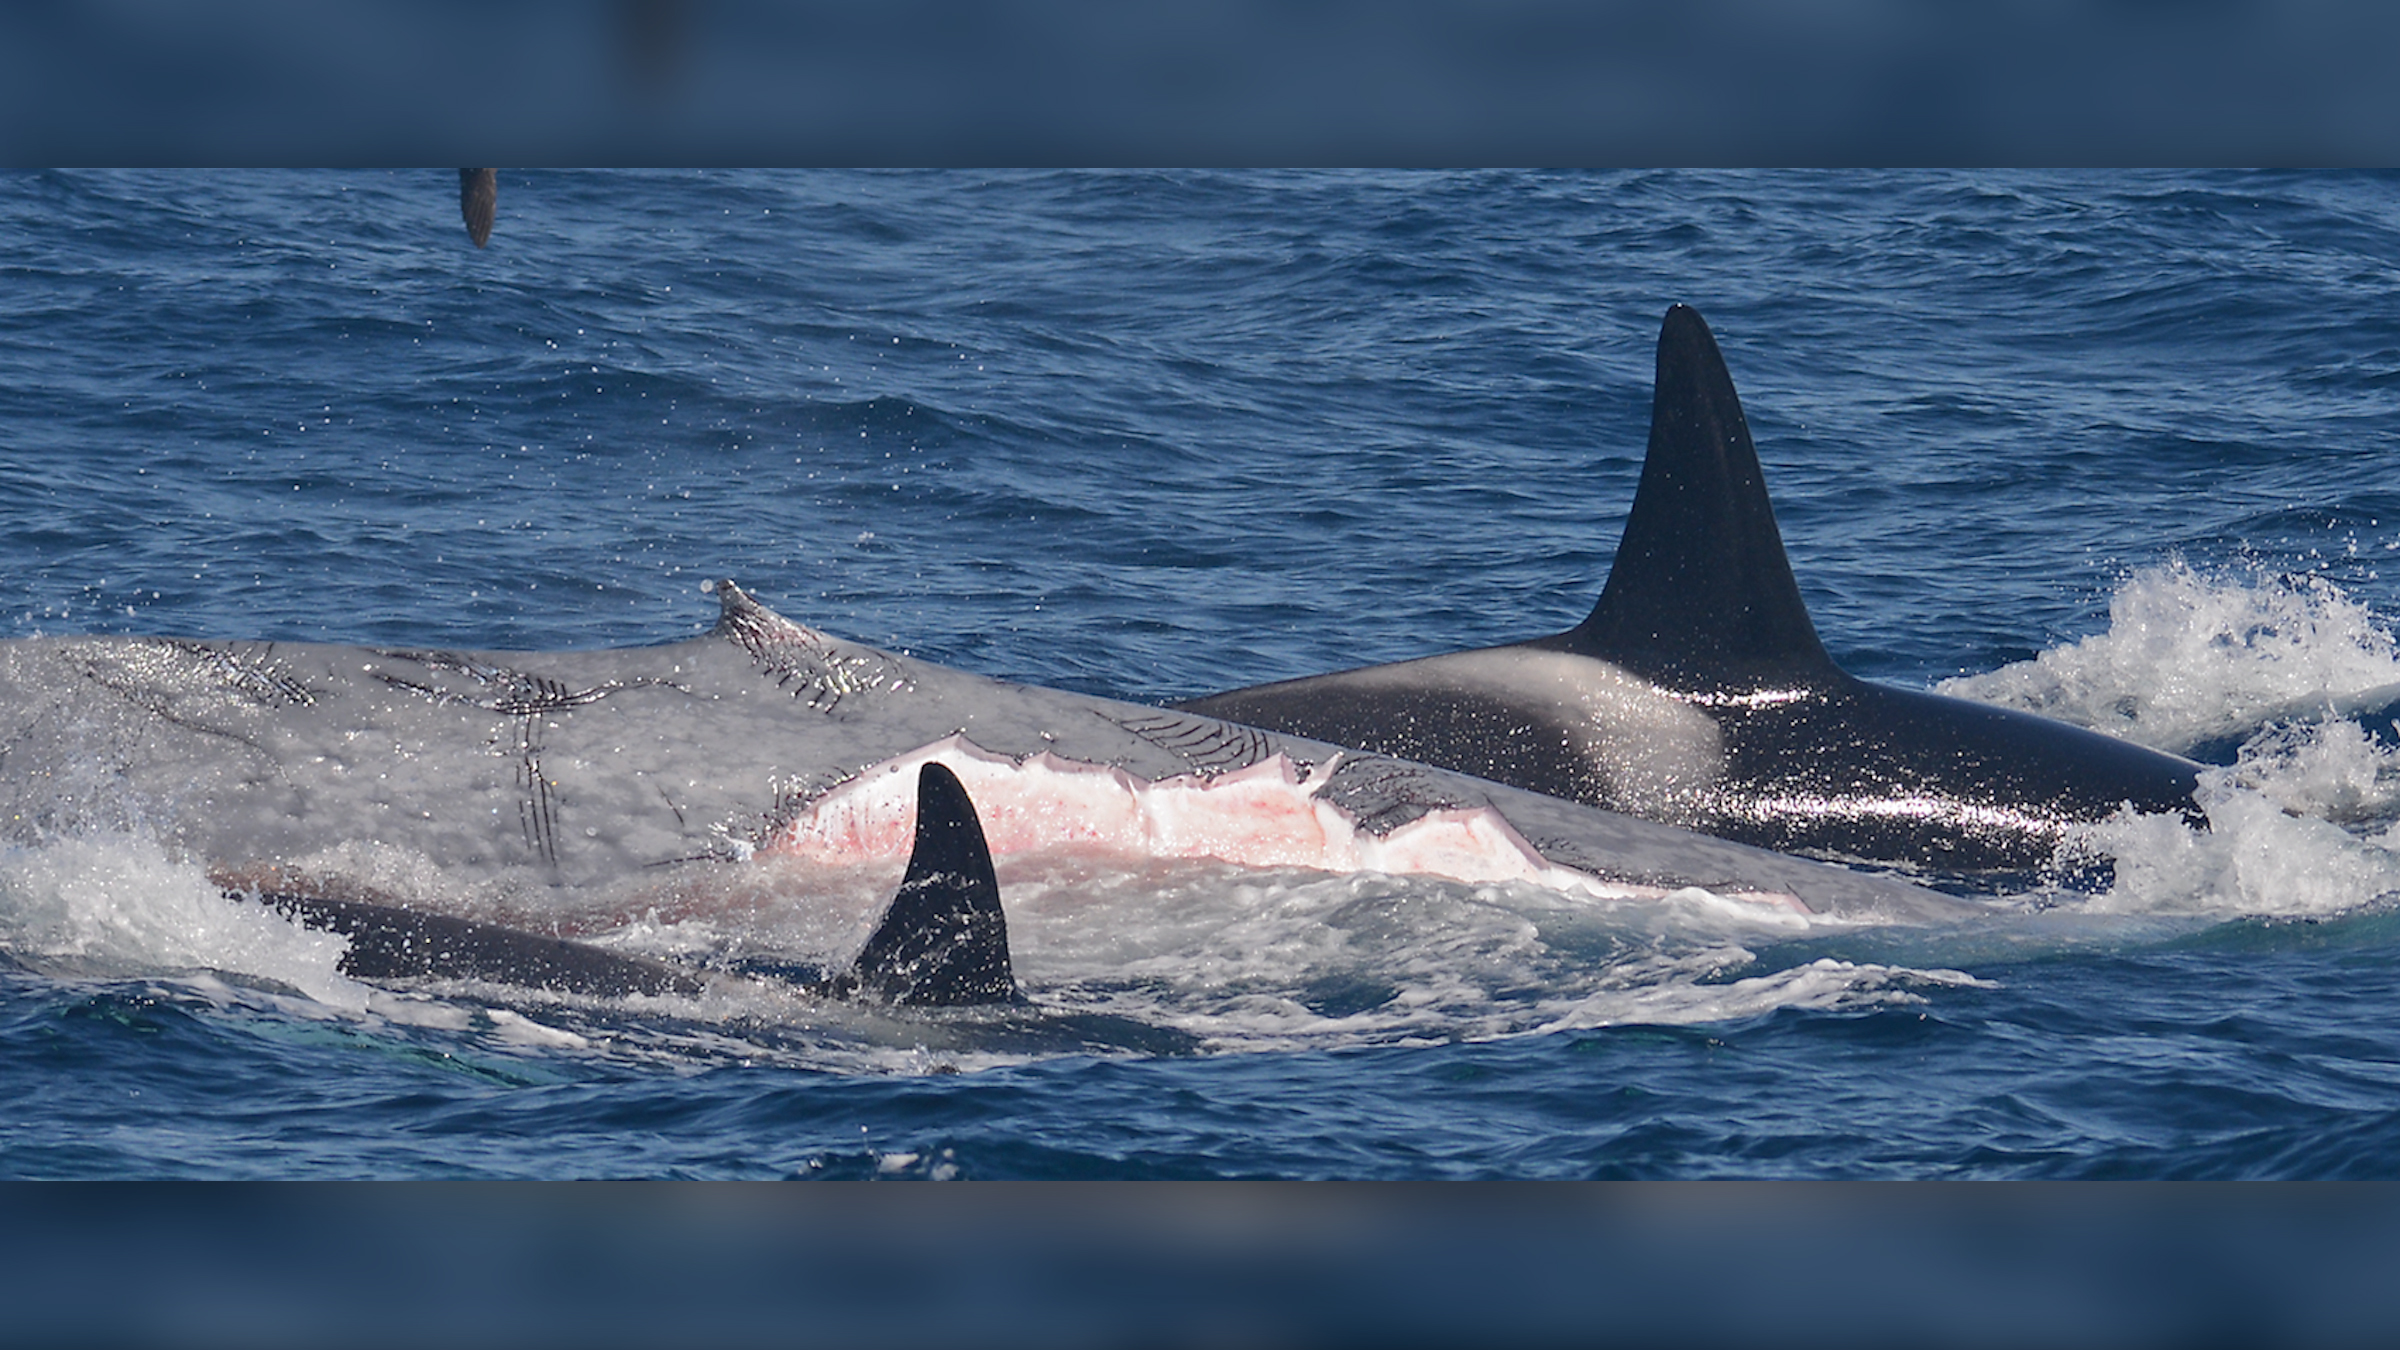 Der Blauwal hatte fehlende Speckstücke, Zahnabdrücke und Zahnharkenspuren von den angreifenden Orcas an seinem Körper.